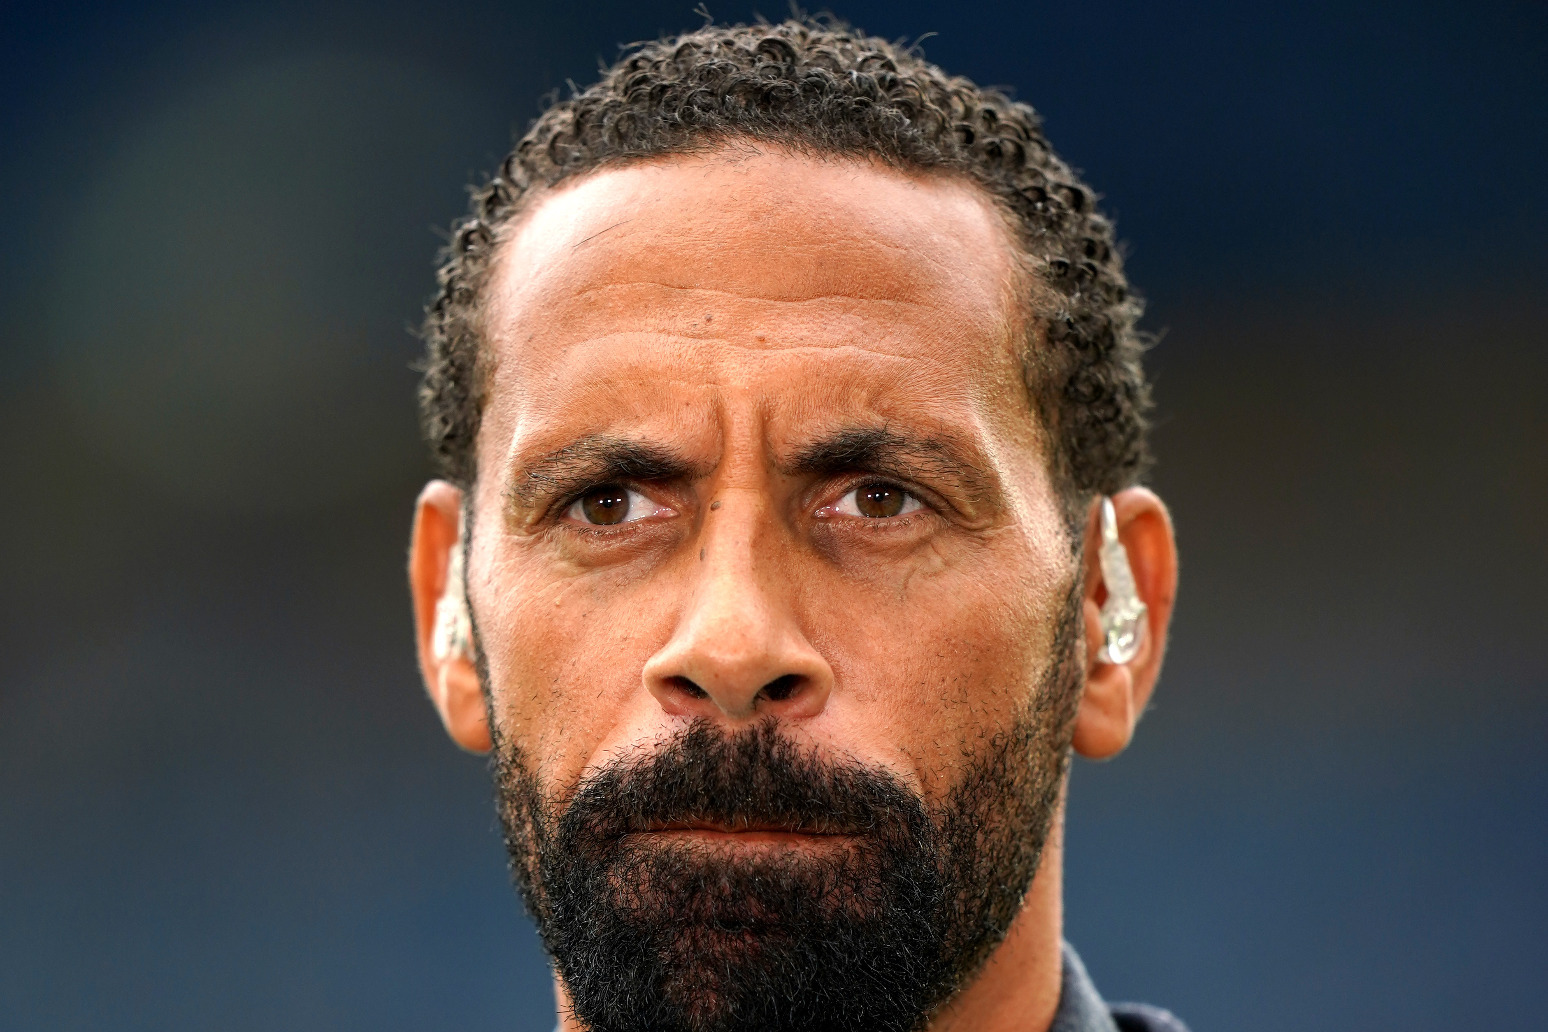 Football supporter admits racially abusing Rio Ferdinand 